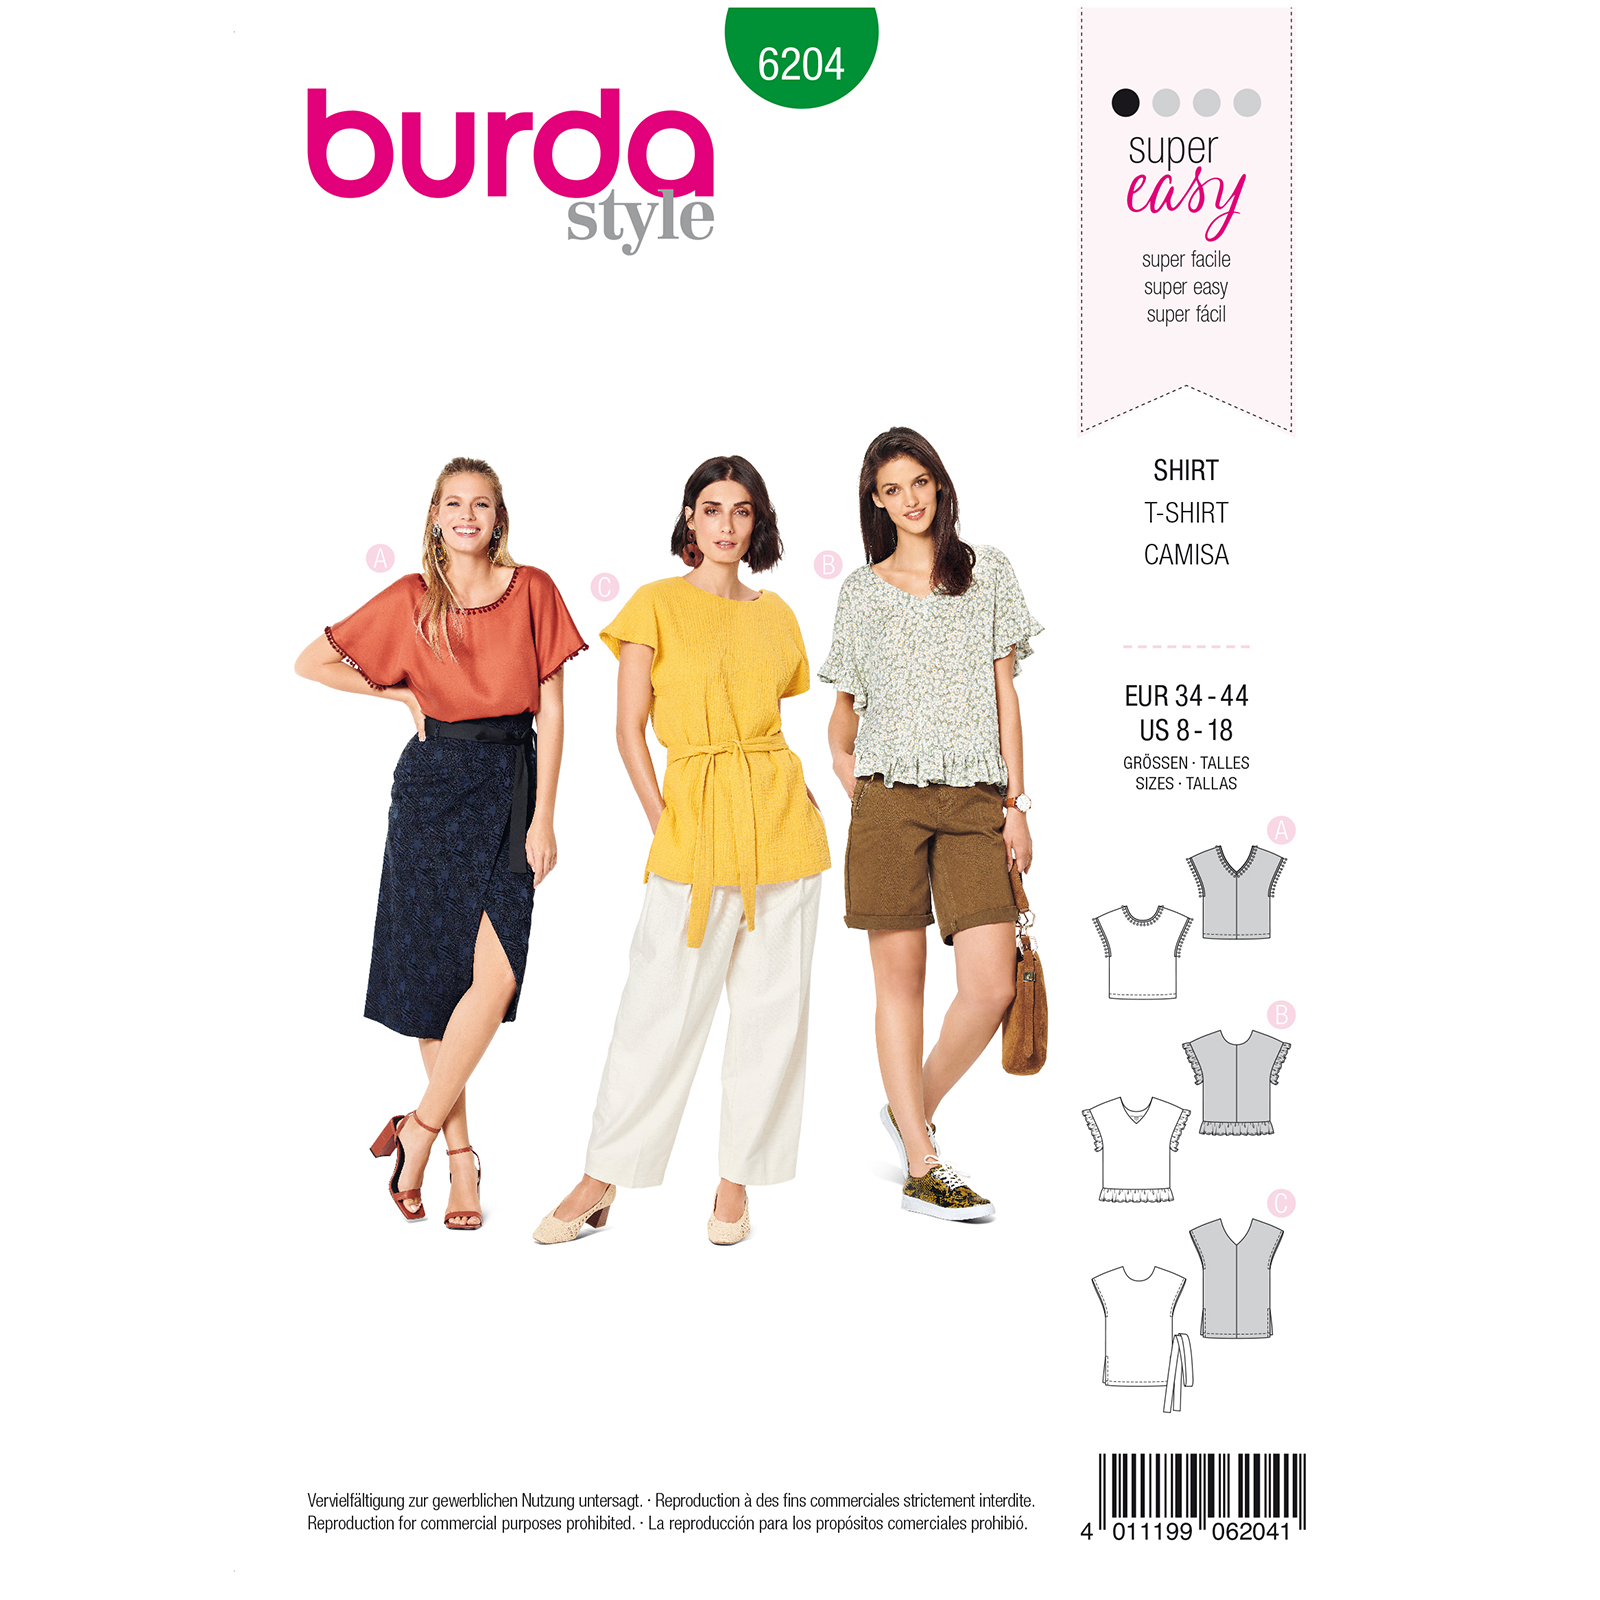 Burda Groen 6204 - Shirt in Variaties